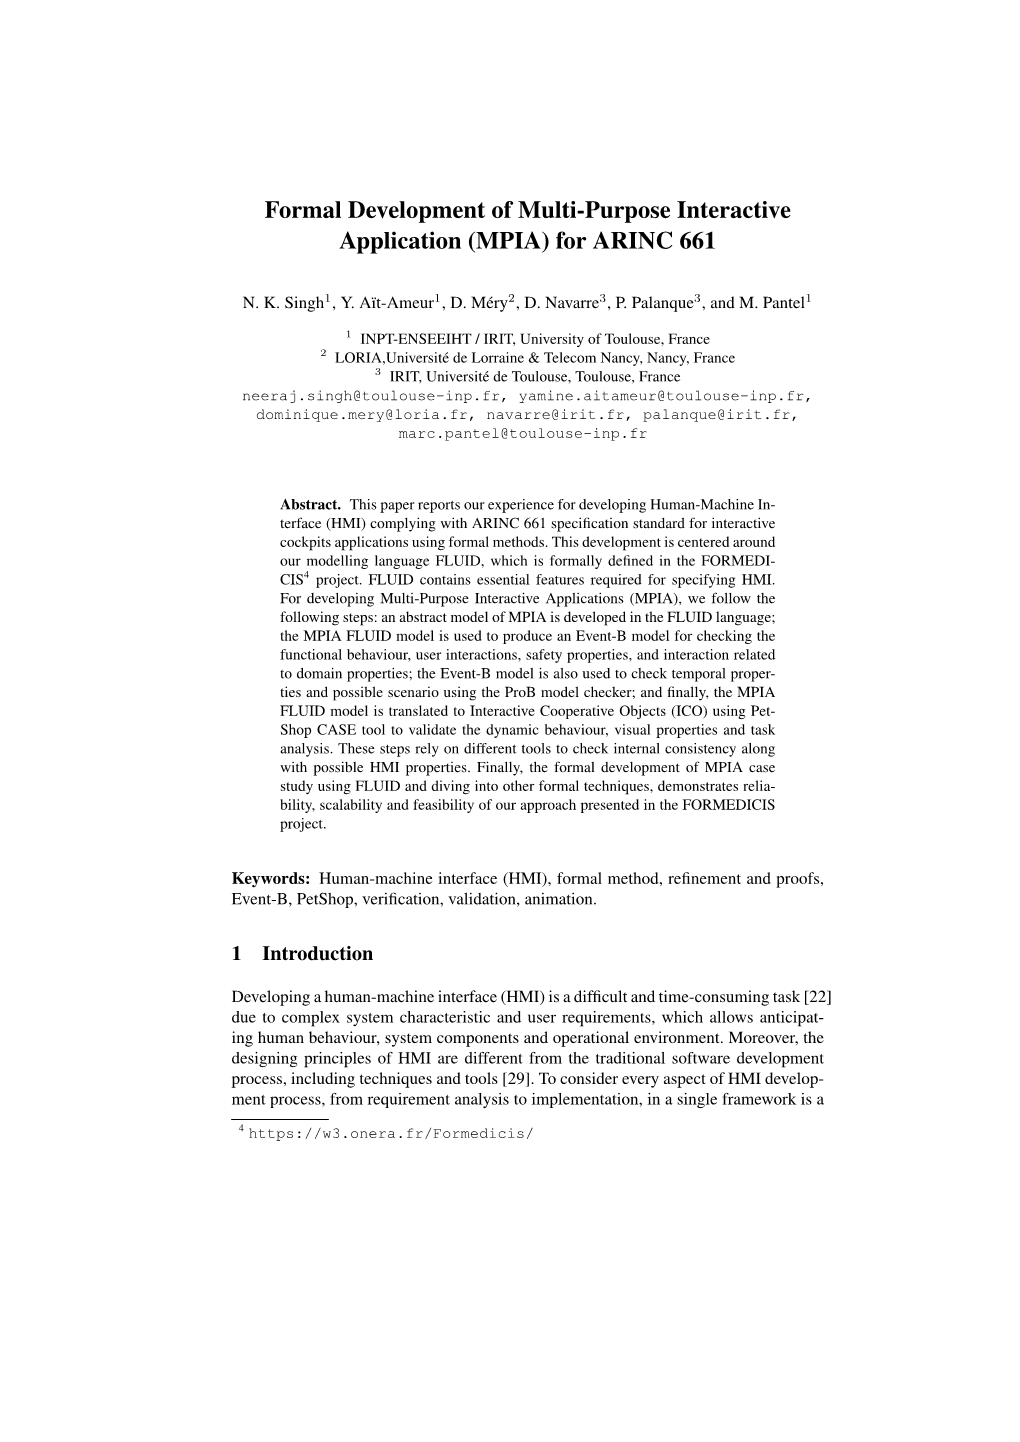 Formal Development of Multi-Purpose Interactive Application (MPIA) for ARINC 661